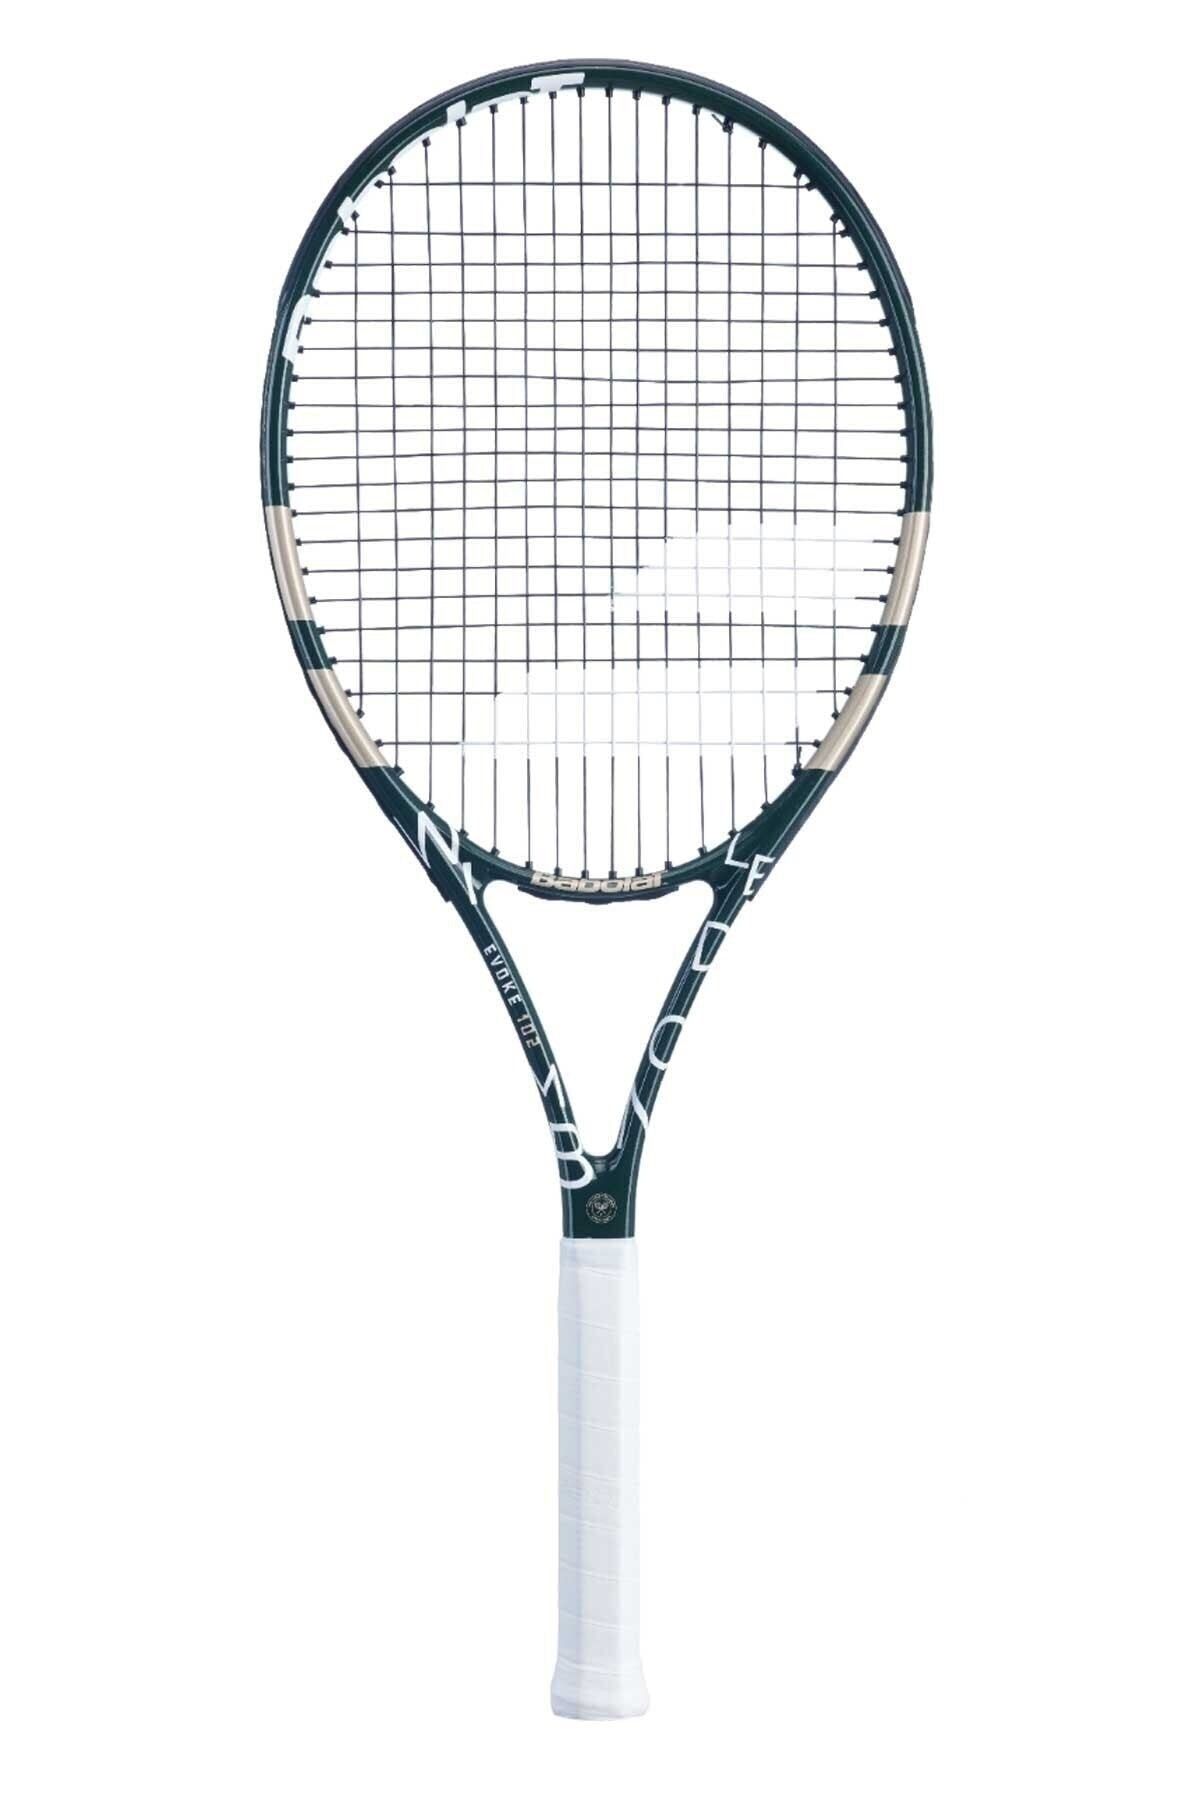 BABOLAT Evoke 102 Wimbledon 270 gr Yetişkin Tenis Raketi Kılıf Hediyeli